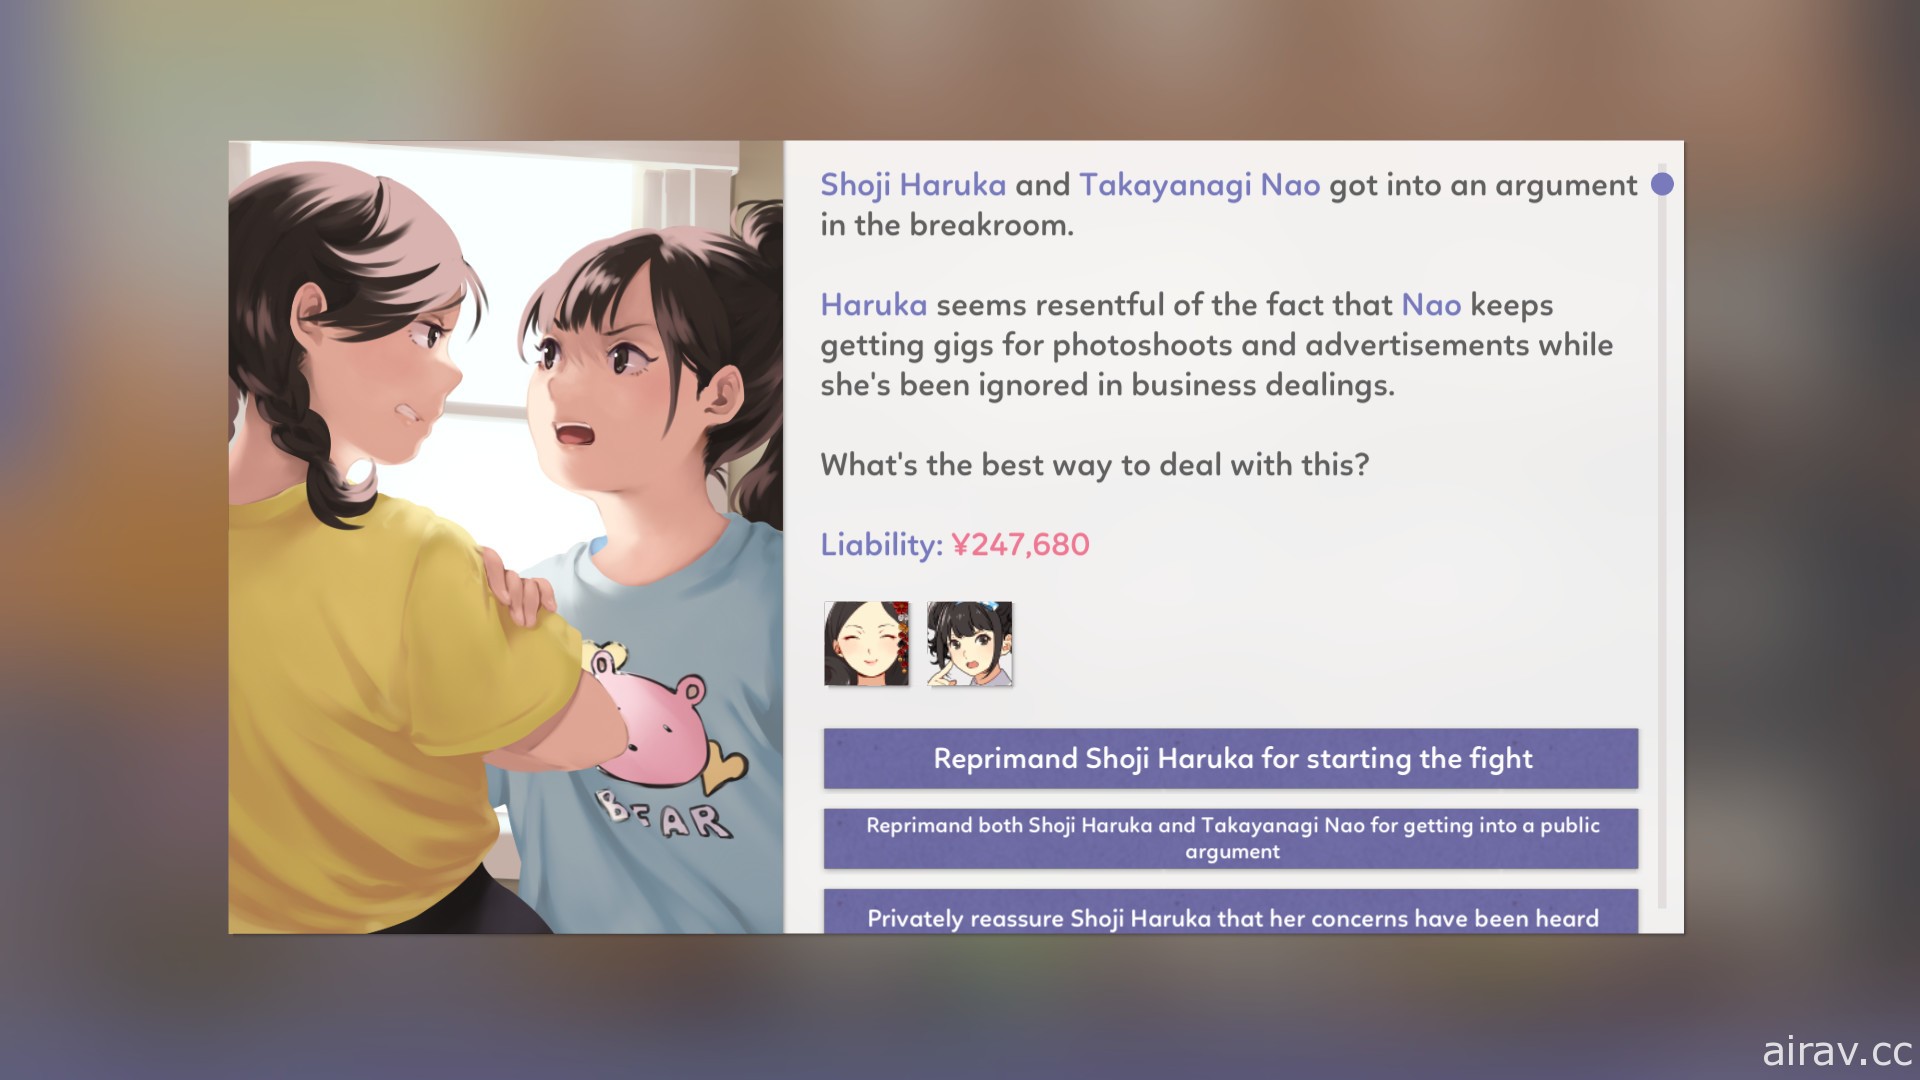 偶像養成遊戲《偶像經紀人》今公開日文宣傳影片 激勵少女朝更高目標邁進